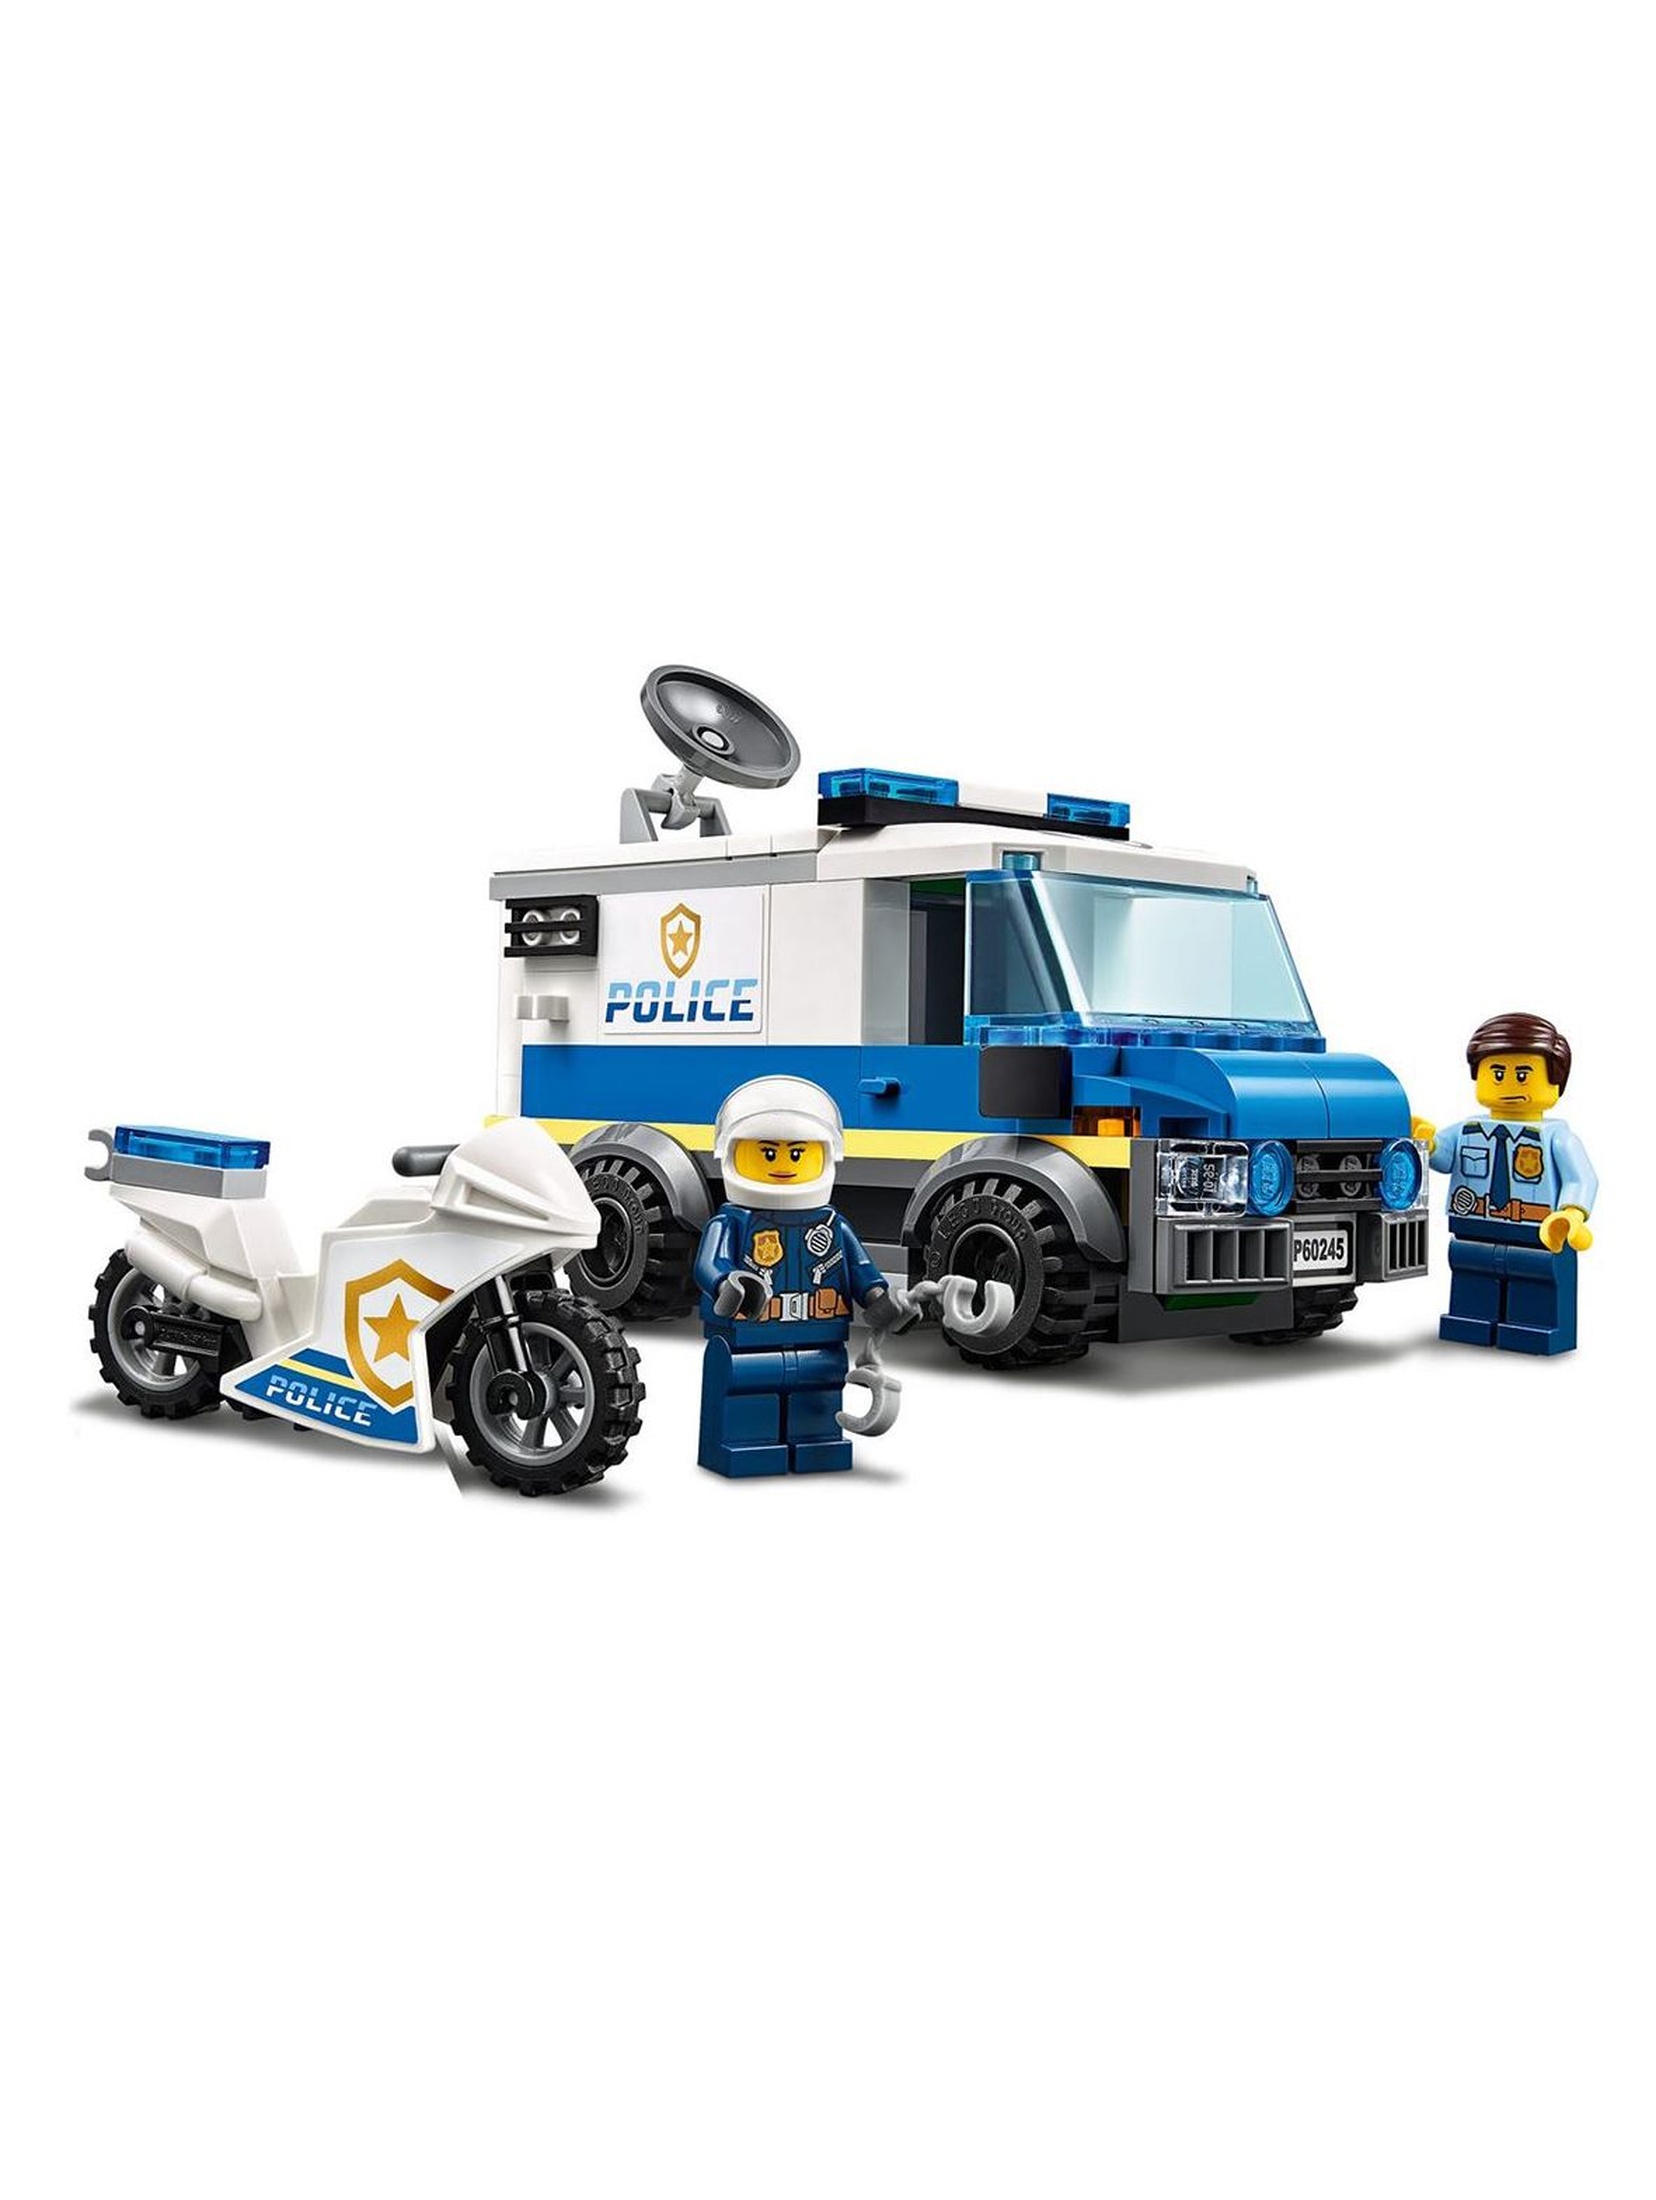 Lego City - Napad z monster truckiem - 362 el wiek 5+